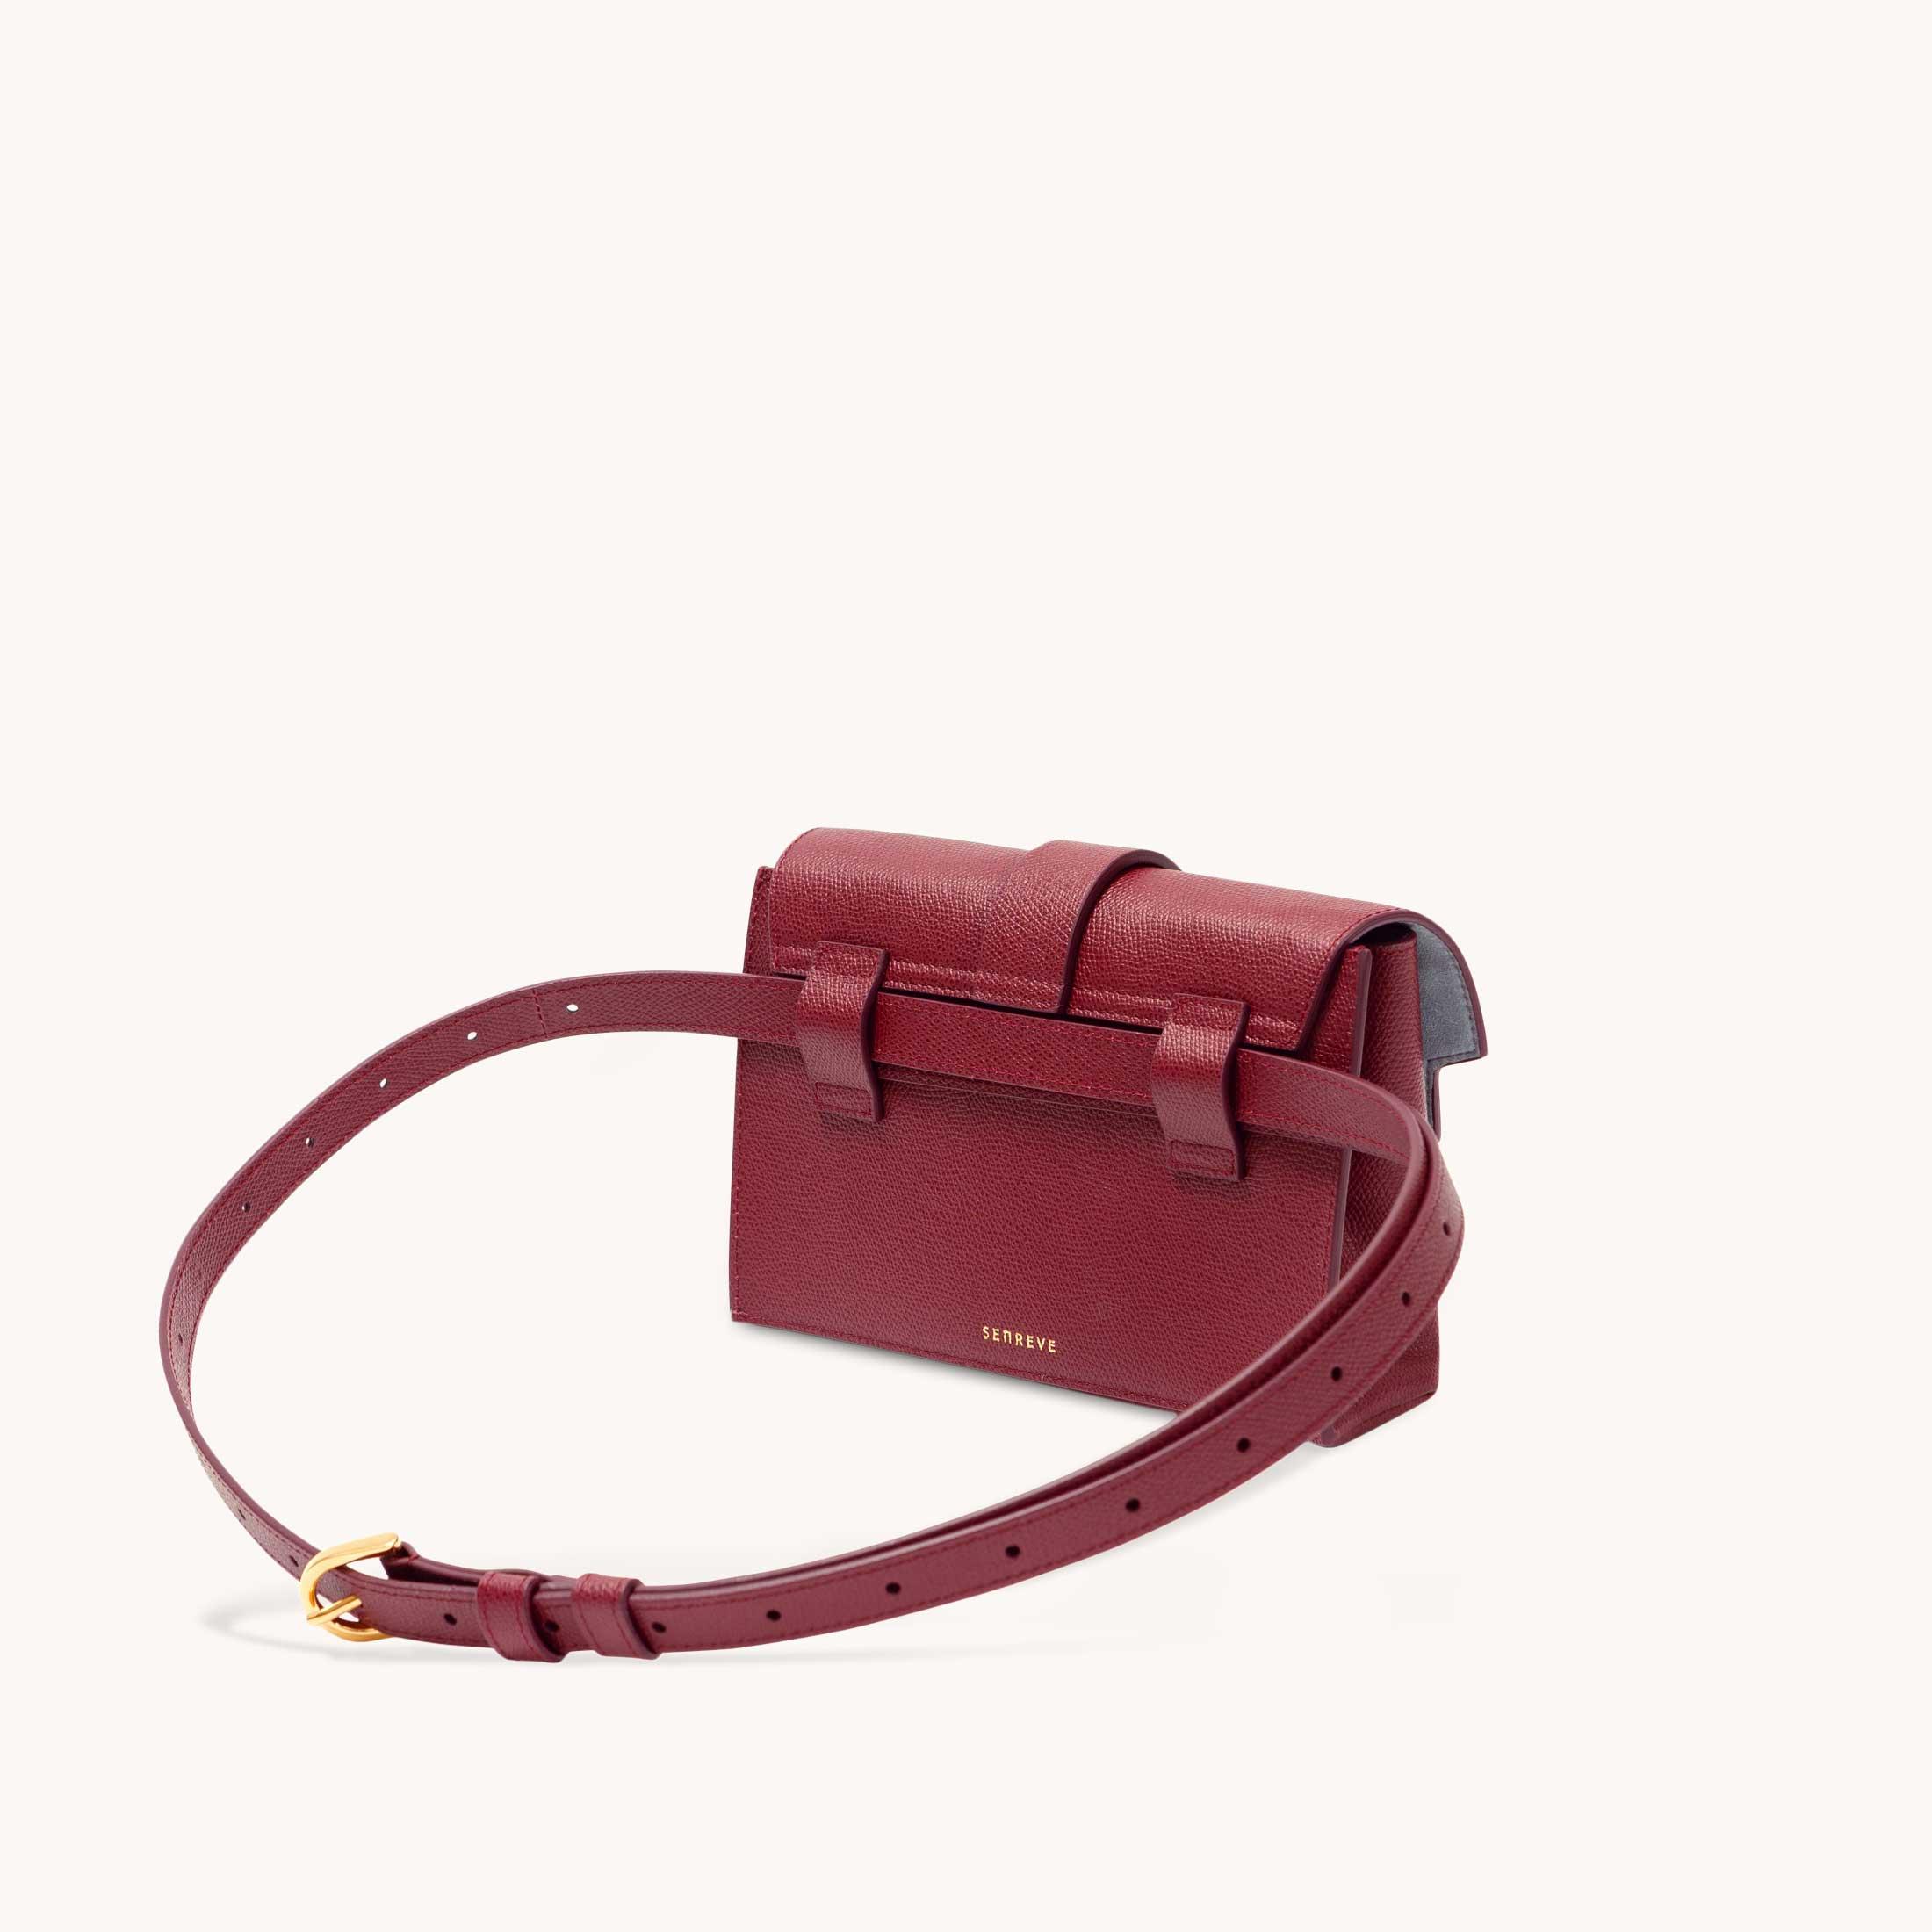 Senreve Sale, Aria Belt Bag, Pebbled in Red